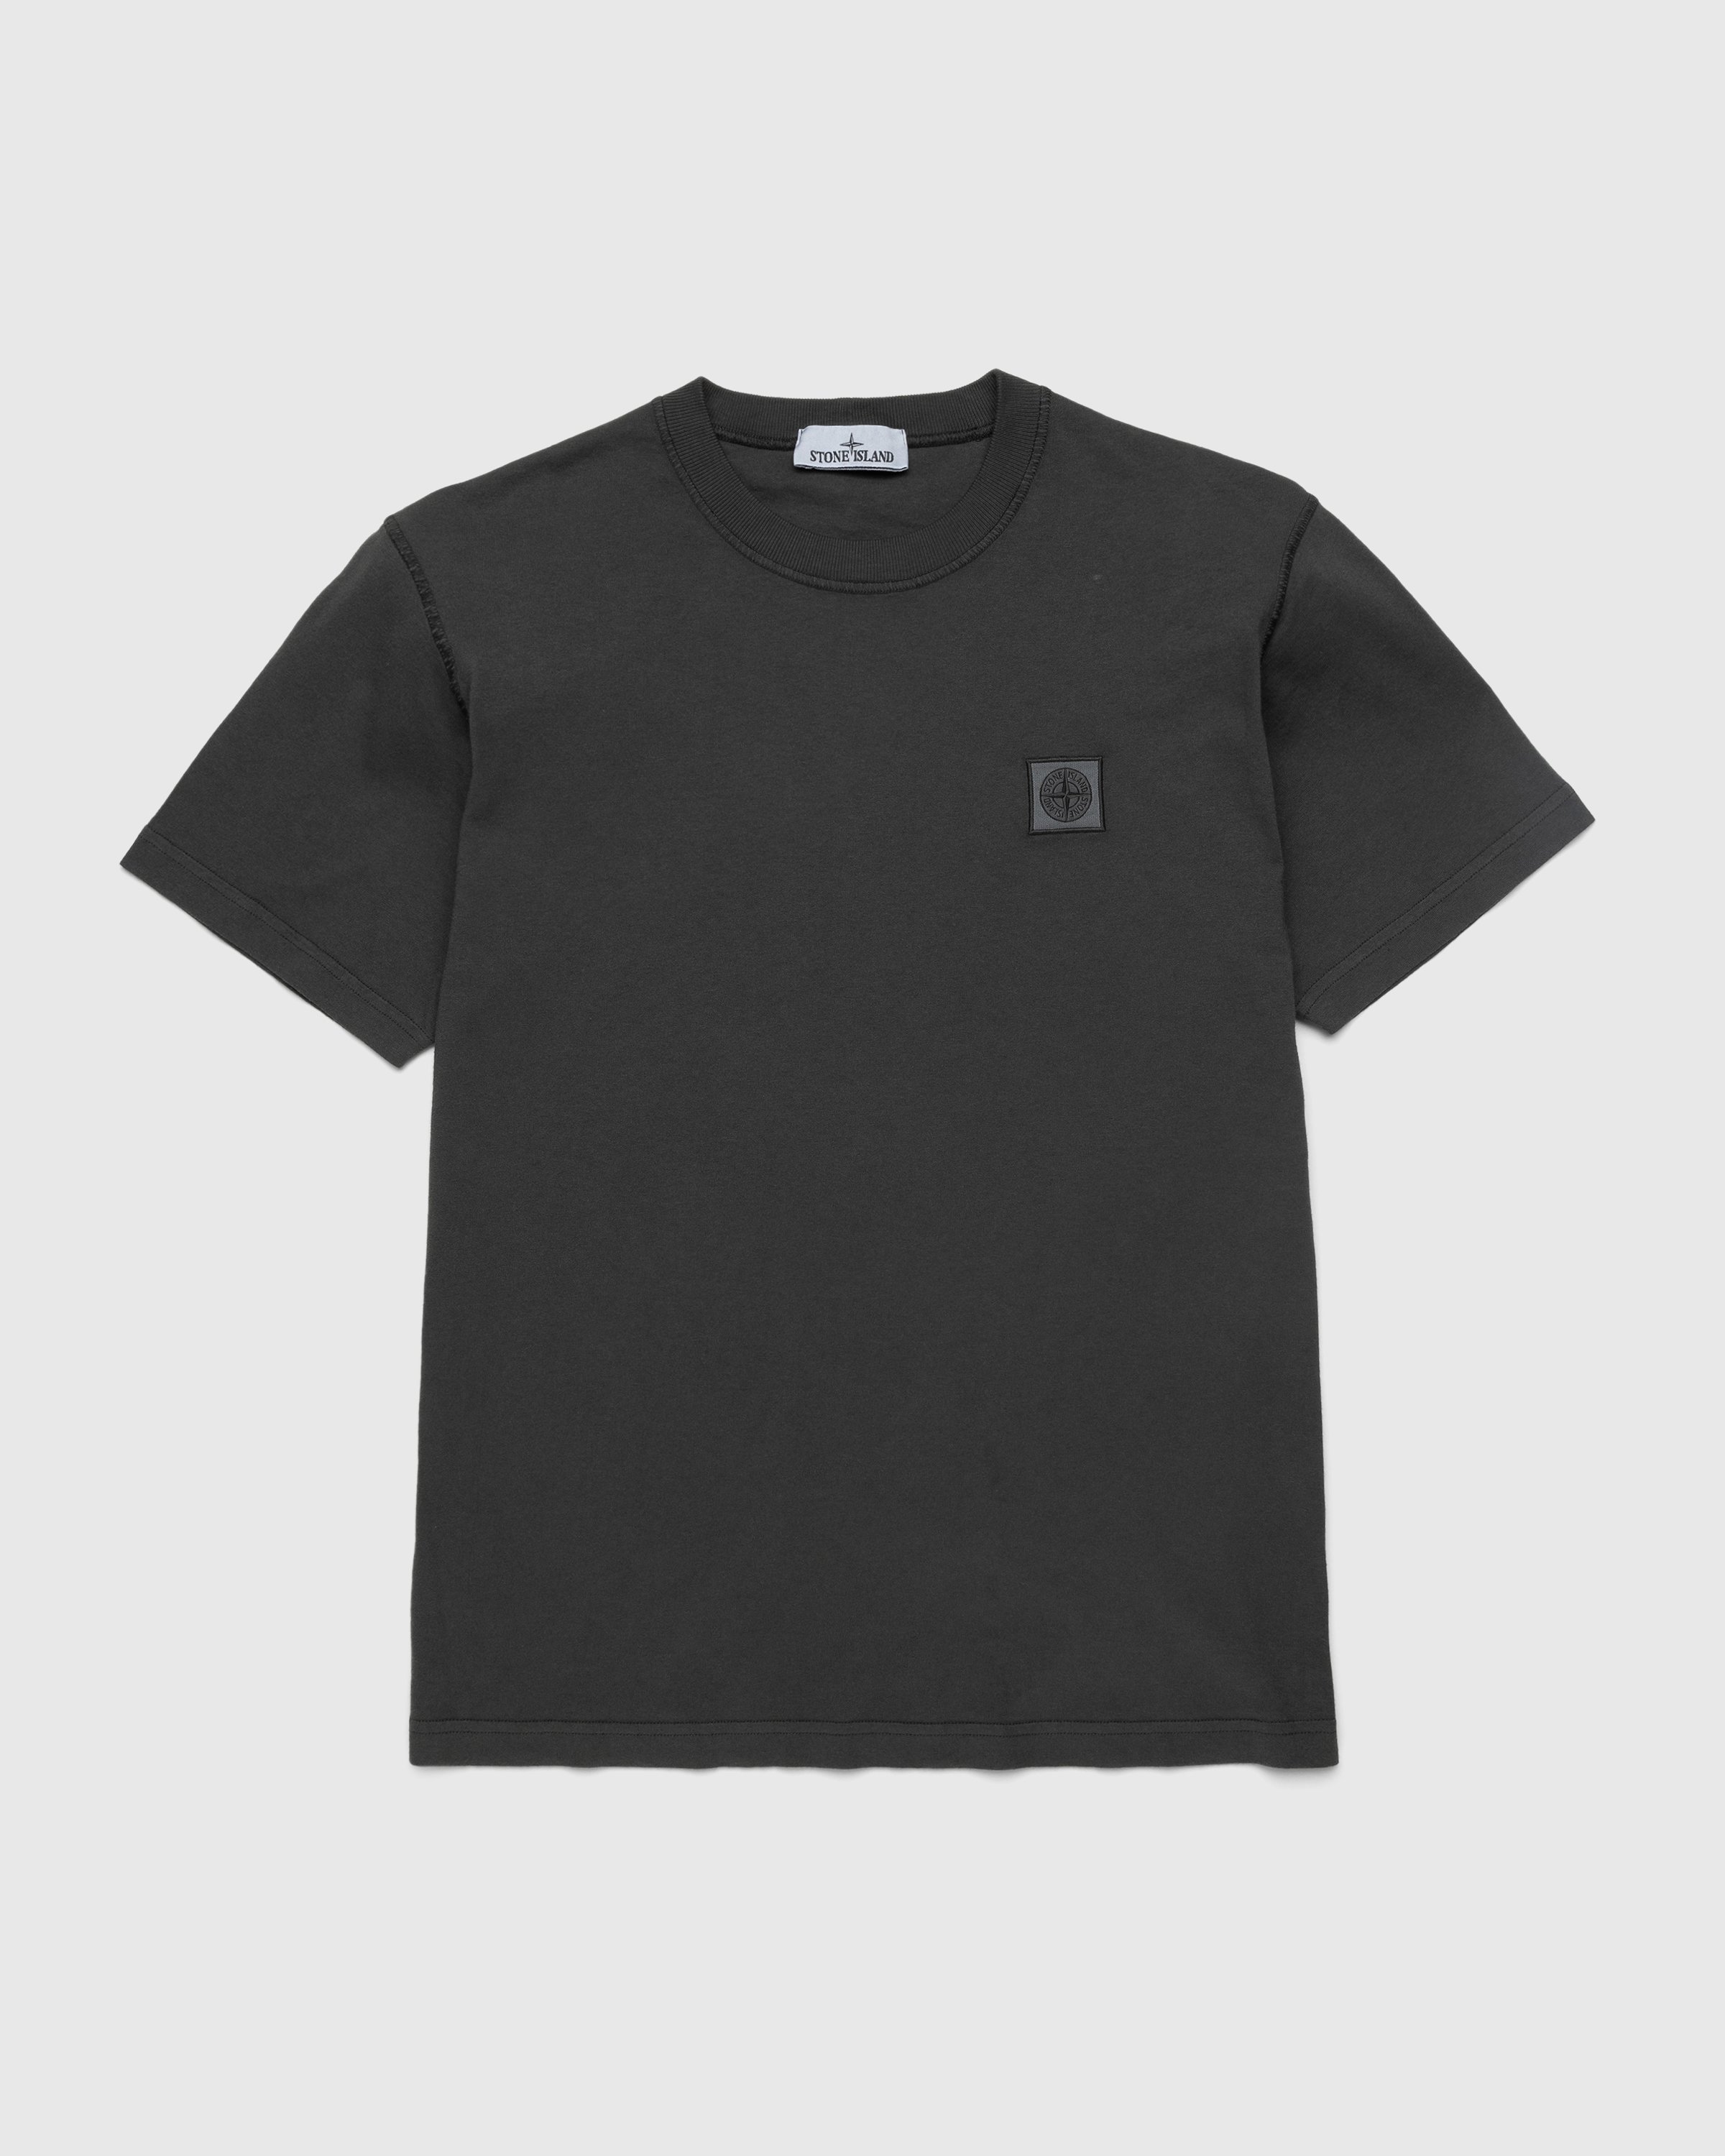 Stone Island - T-Shirt Charcoal 23757 - Clothing - Grey - Image 1